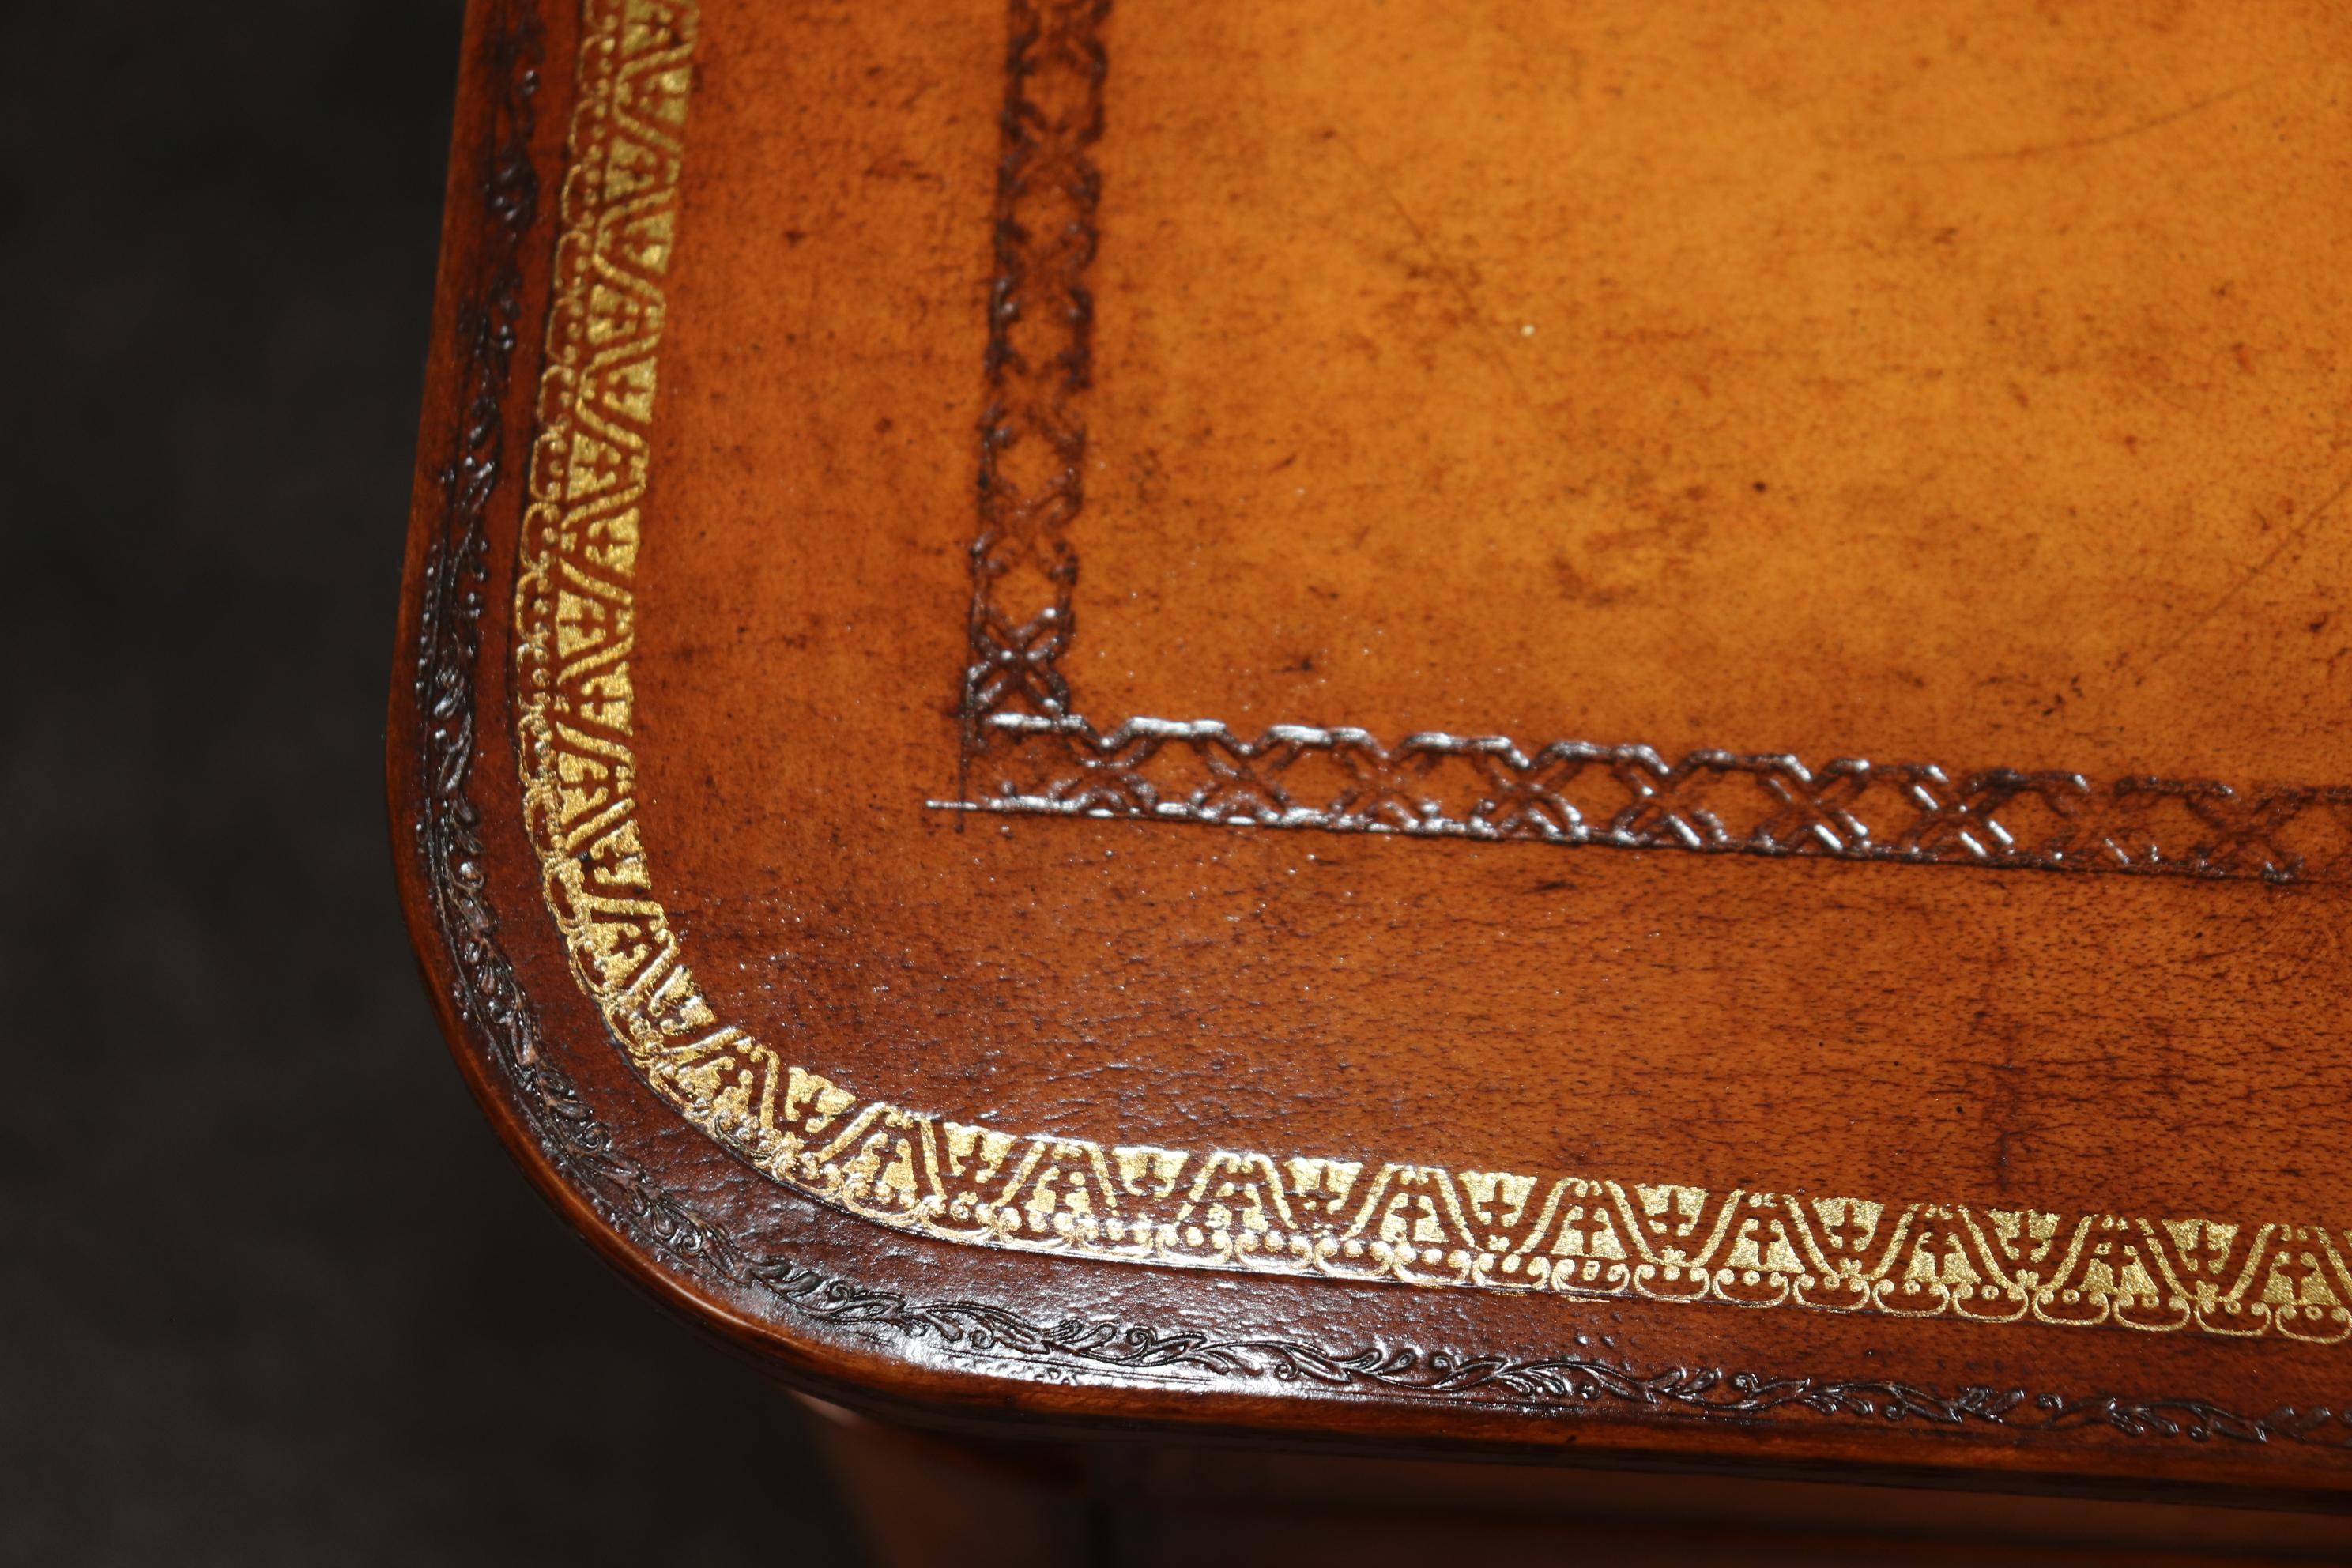 Diese Kommode von Maitland Smith ist mit Leder umwickelt und mit einer Goldprägung versehen. Das Stück ist in einem antiken patinierten Leder mit absichtlicher Abnutzung und Alter hinzugefügt, um es antik erscheinen zu lassen. Die Truhe ist in gutem